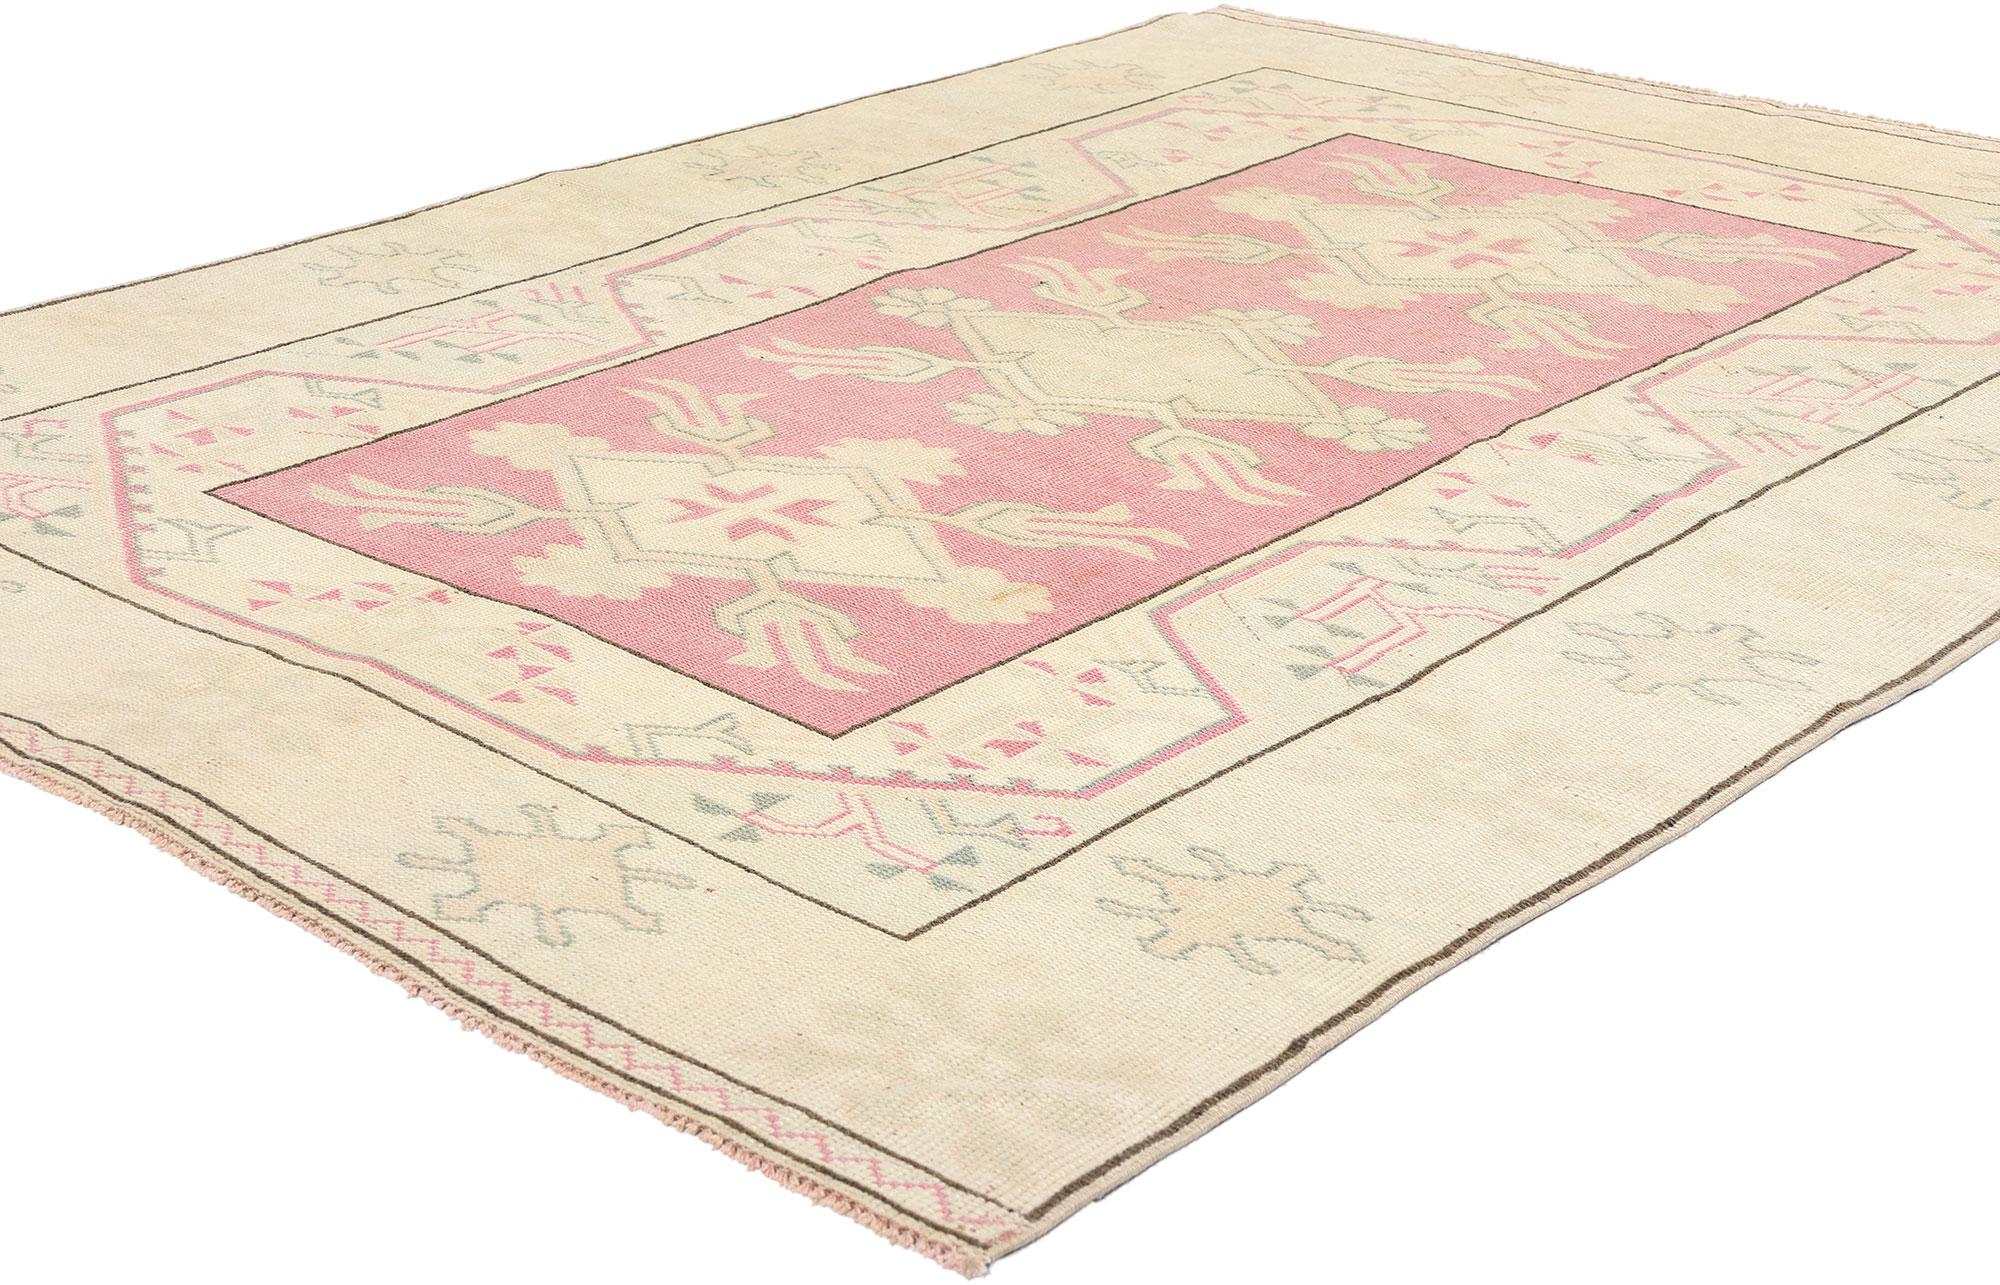 53934 Vintage Pink Türkischer Oushak-Teppich, 05'00 x 06'10. Antike gewaschene türkische Oushak-Teppiche werden einem speziellen Waschverfahren unterzogen, um eine Vintage-Ästhetik zu erzielen, die sich durch weiche, gedämpfte Farben auszeichnet,